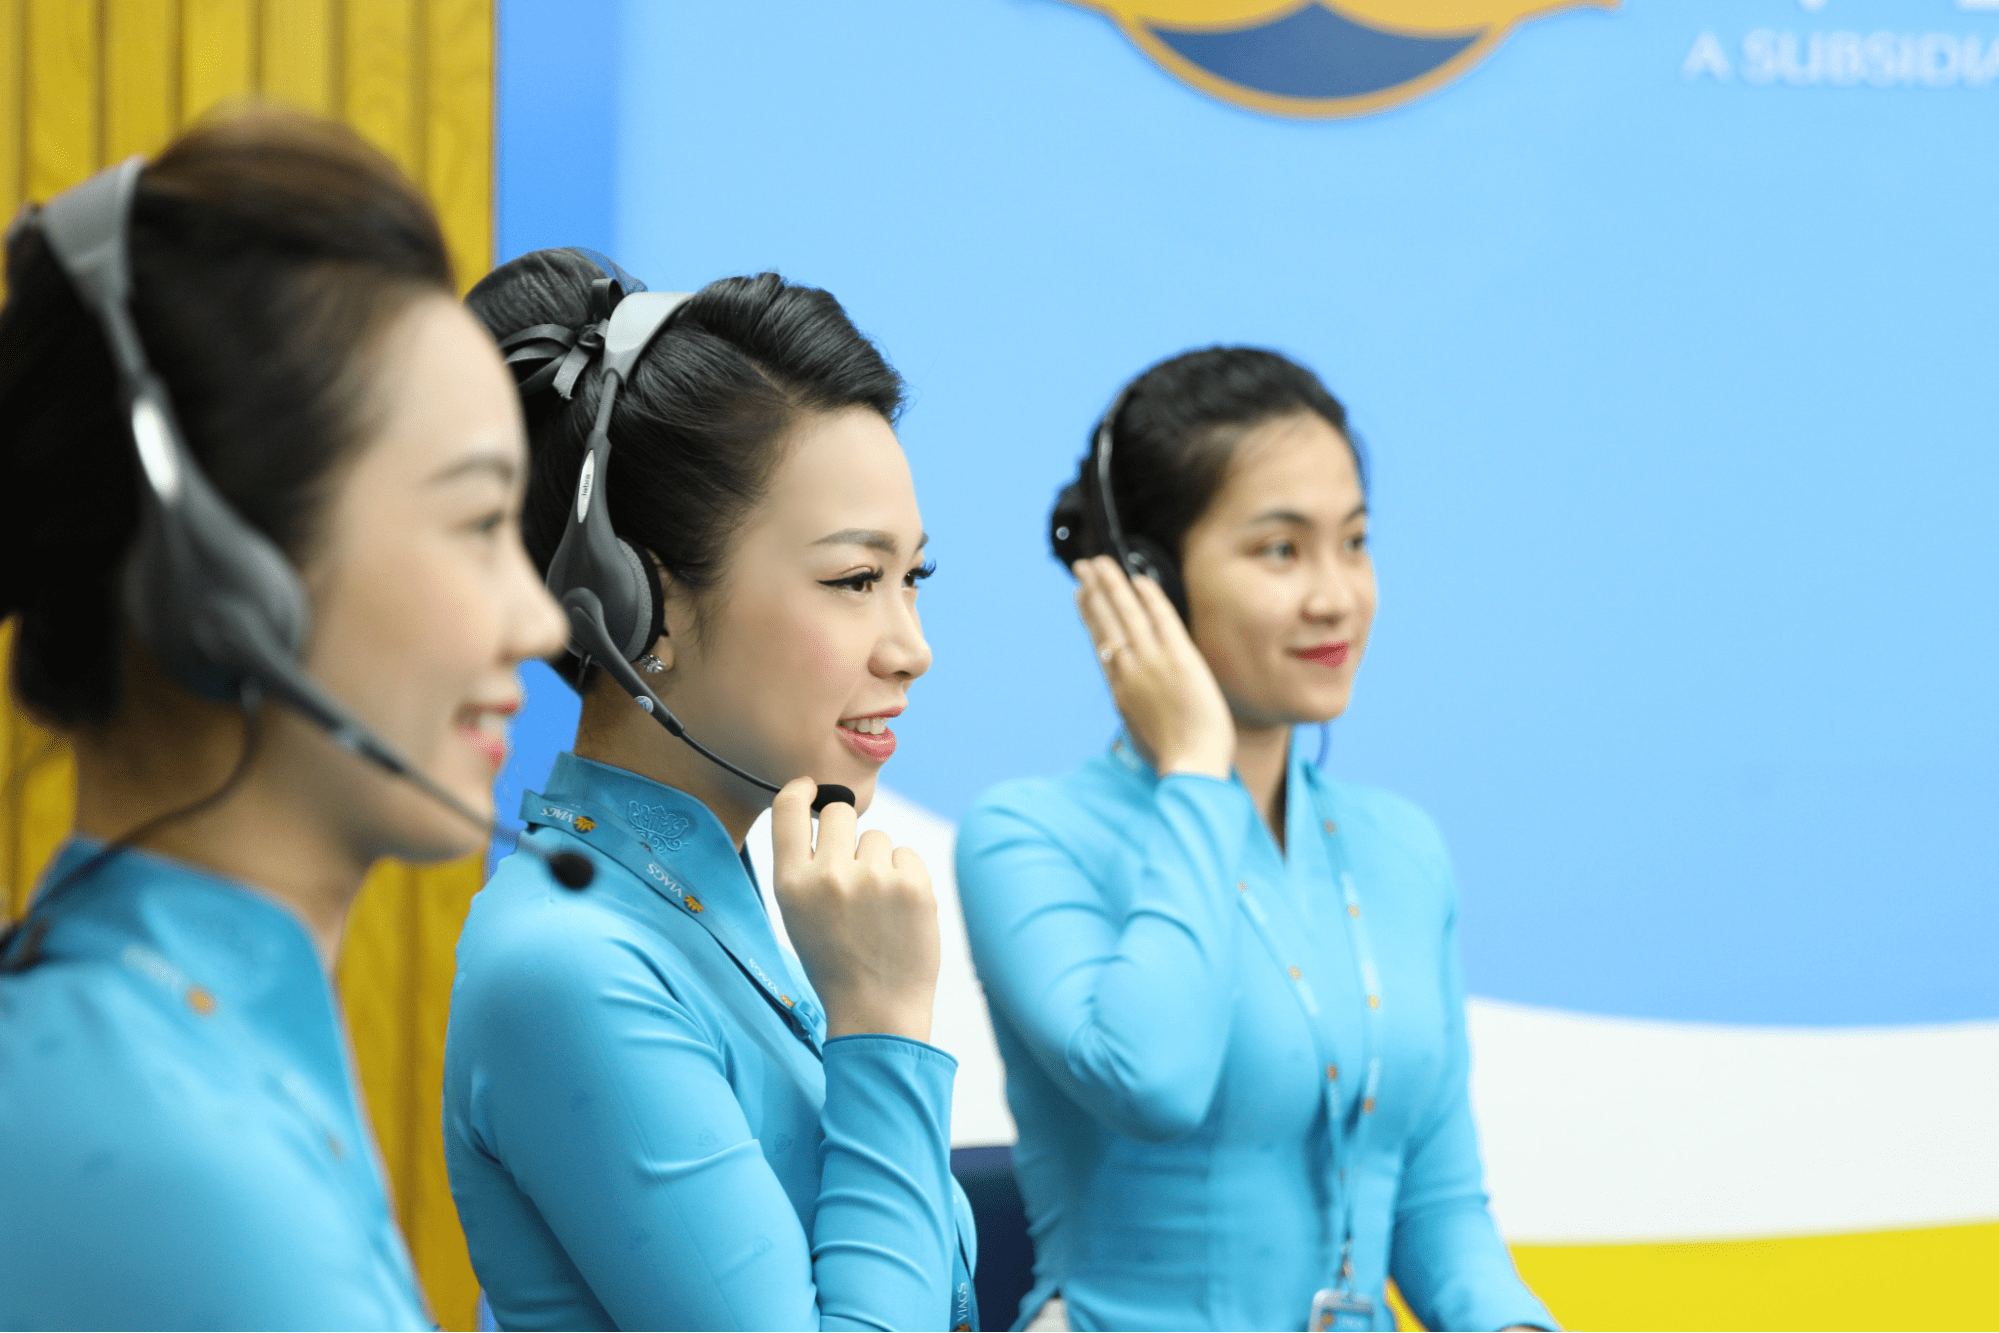 Khách hàng có thể chọn check in online thông qua hotline để được tư vấn, hỗ trợ nhanh chóng. Nguồn: Vietnam Airlines